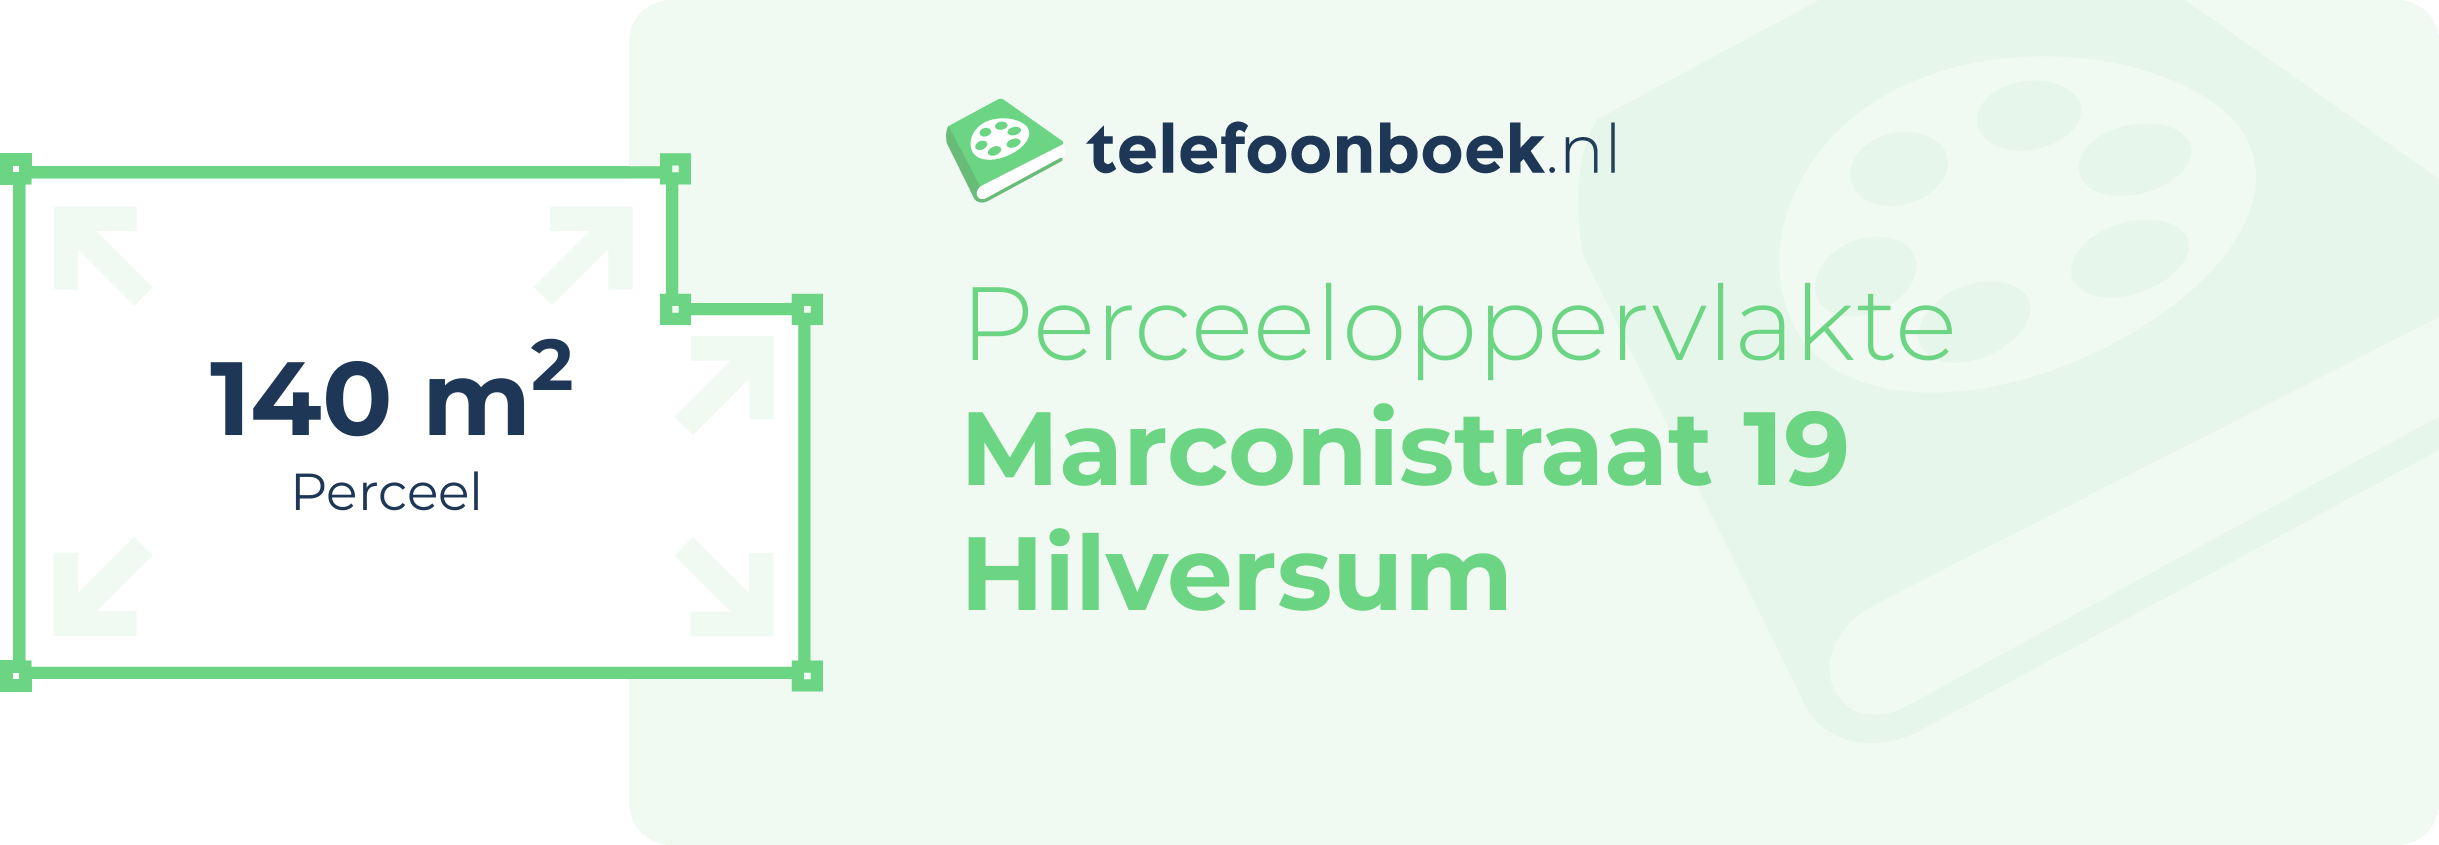 Perceeloppervlakte Marconistraat 19 Hilversum